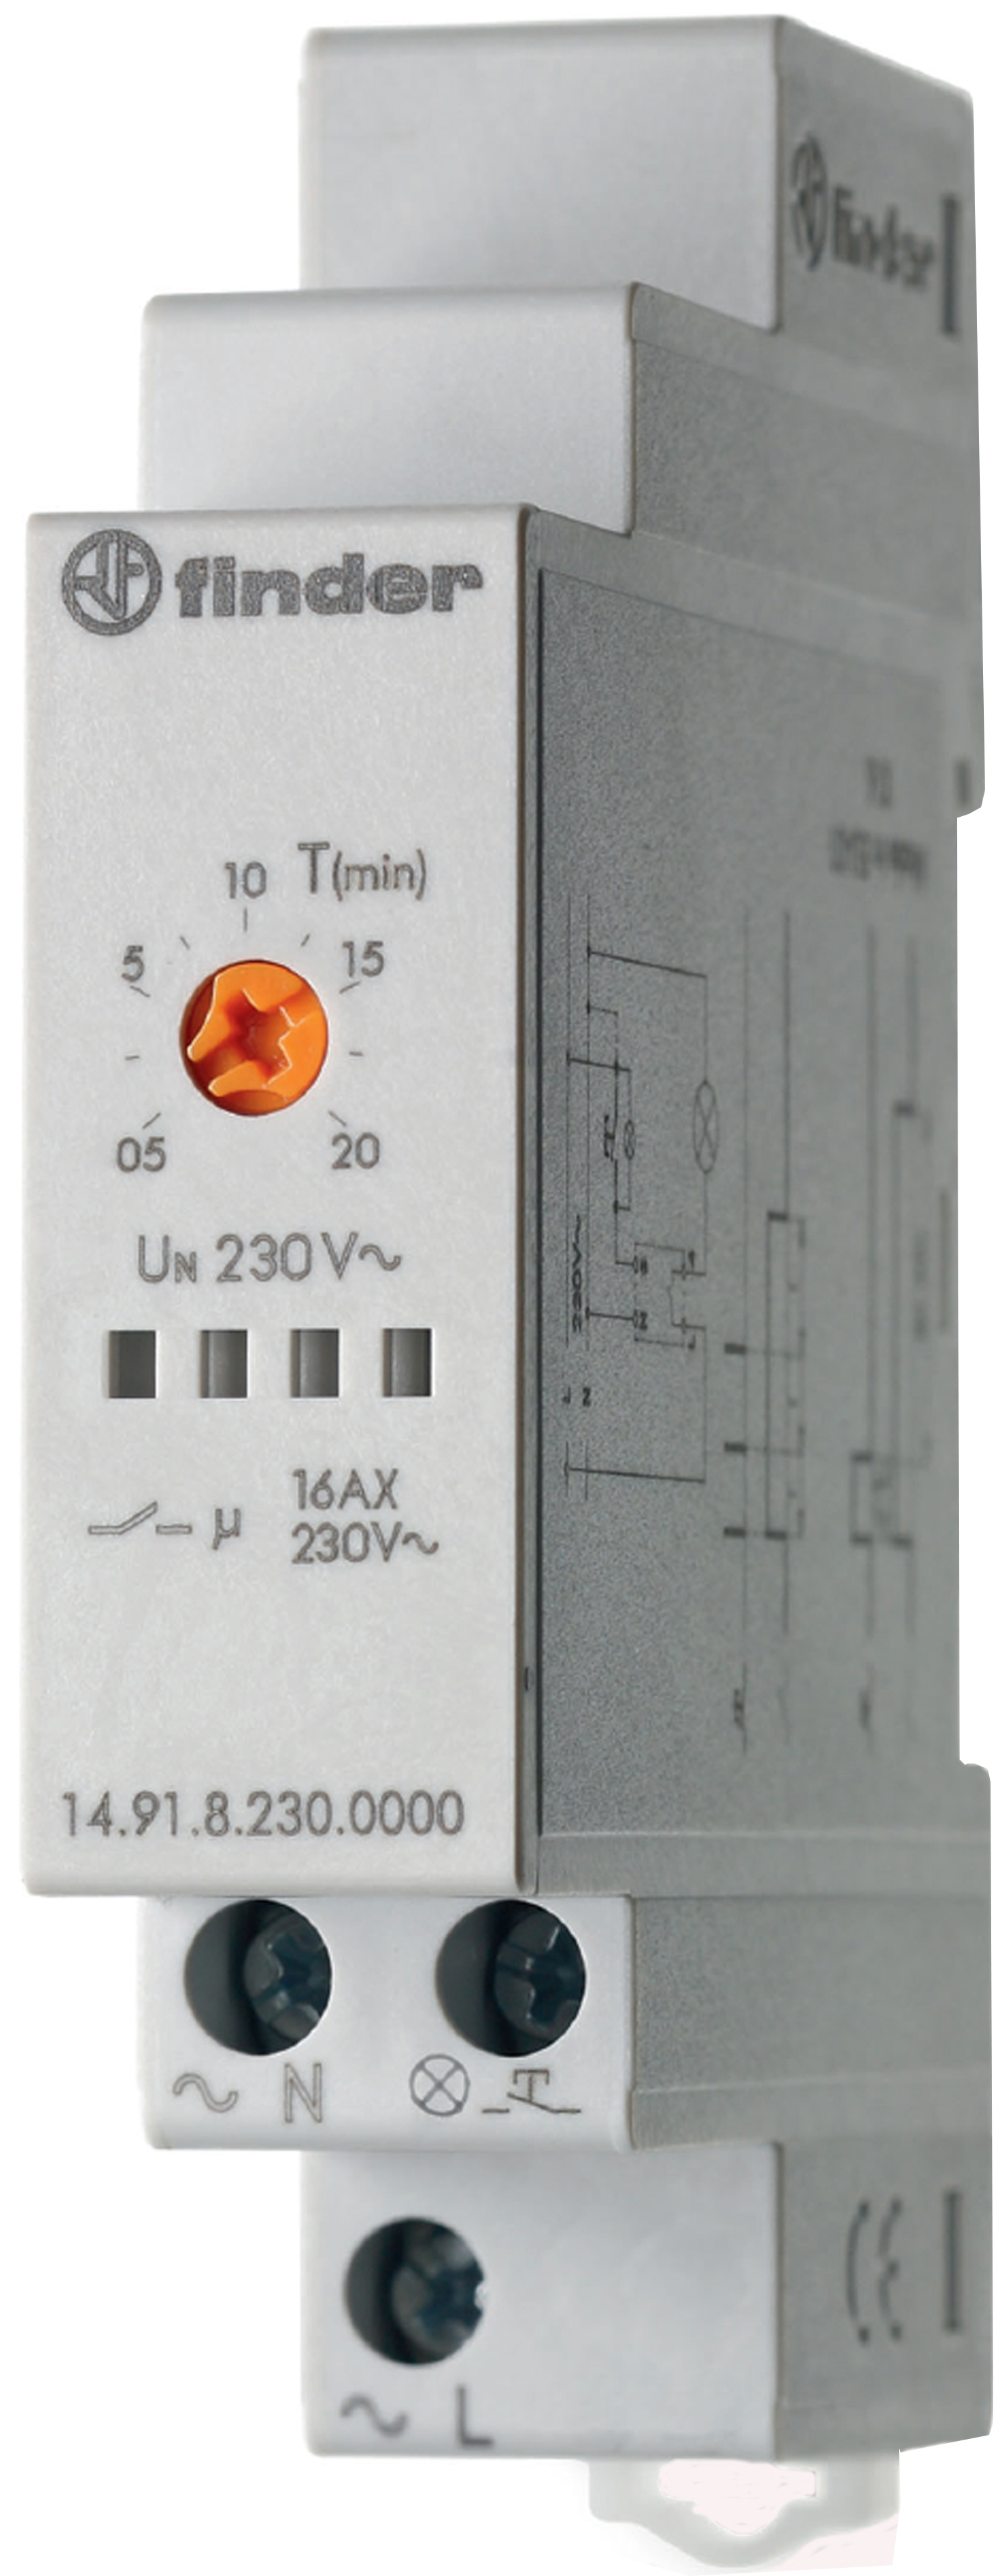 Trappenhuisverlichtingscontroller, inschakelwisser (retriggerable), 1 maakcontact 16 A, voor 230 V AC, 3 aansluitingen